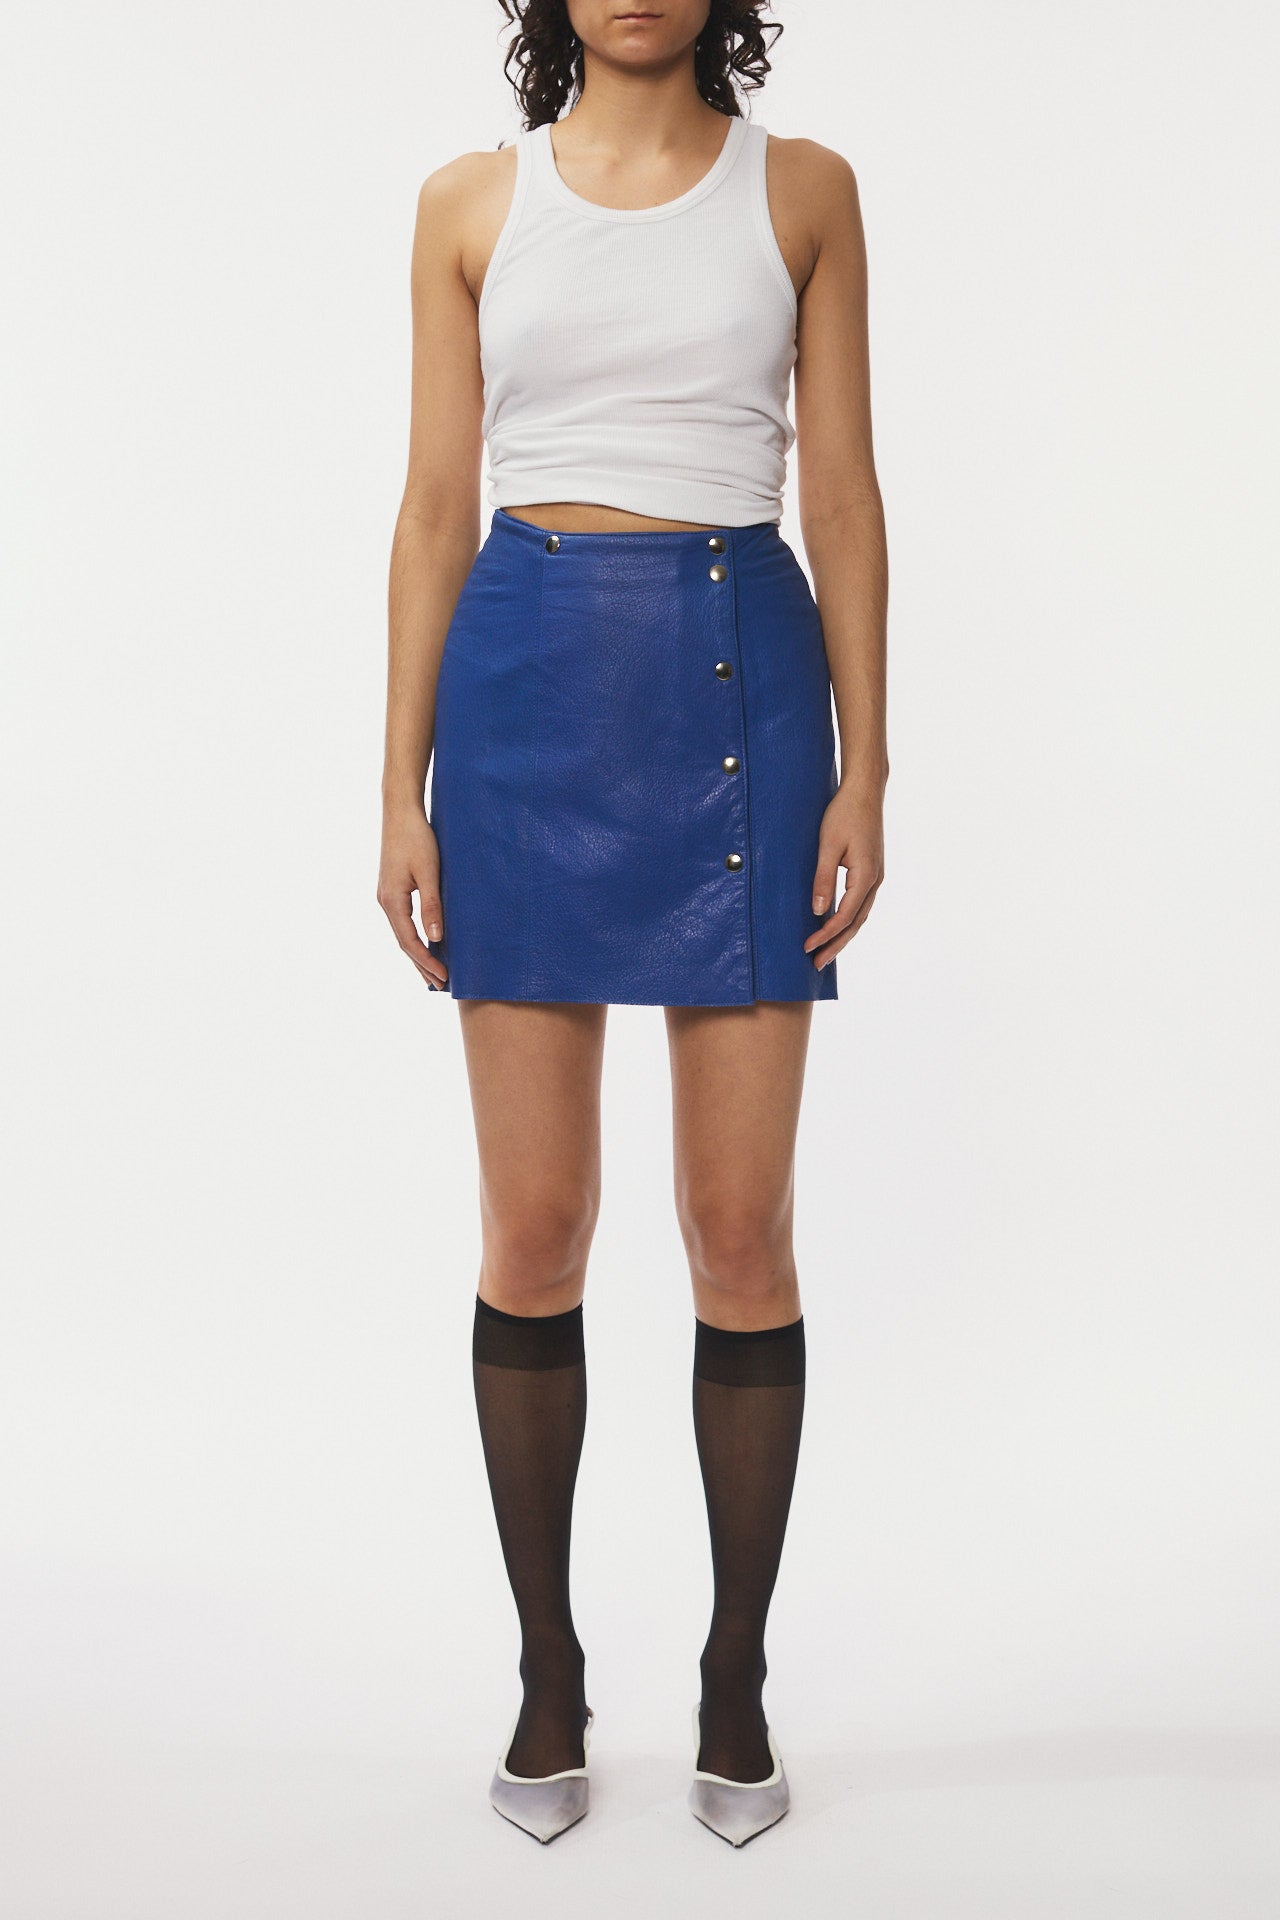 Leather Skirt Short- blue